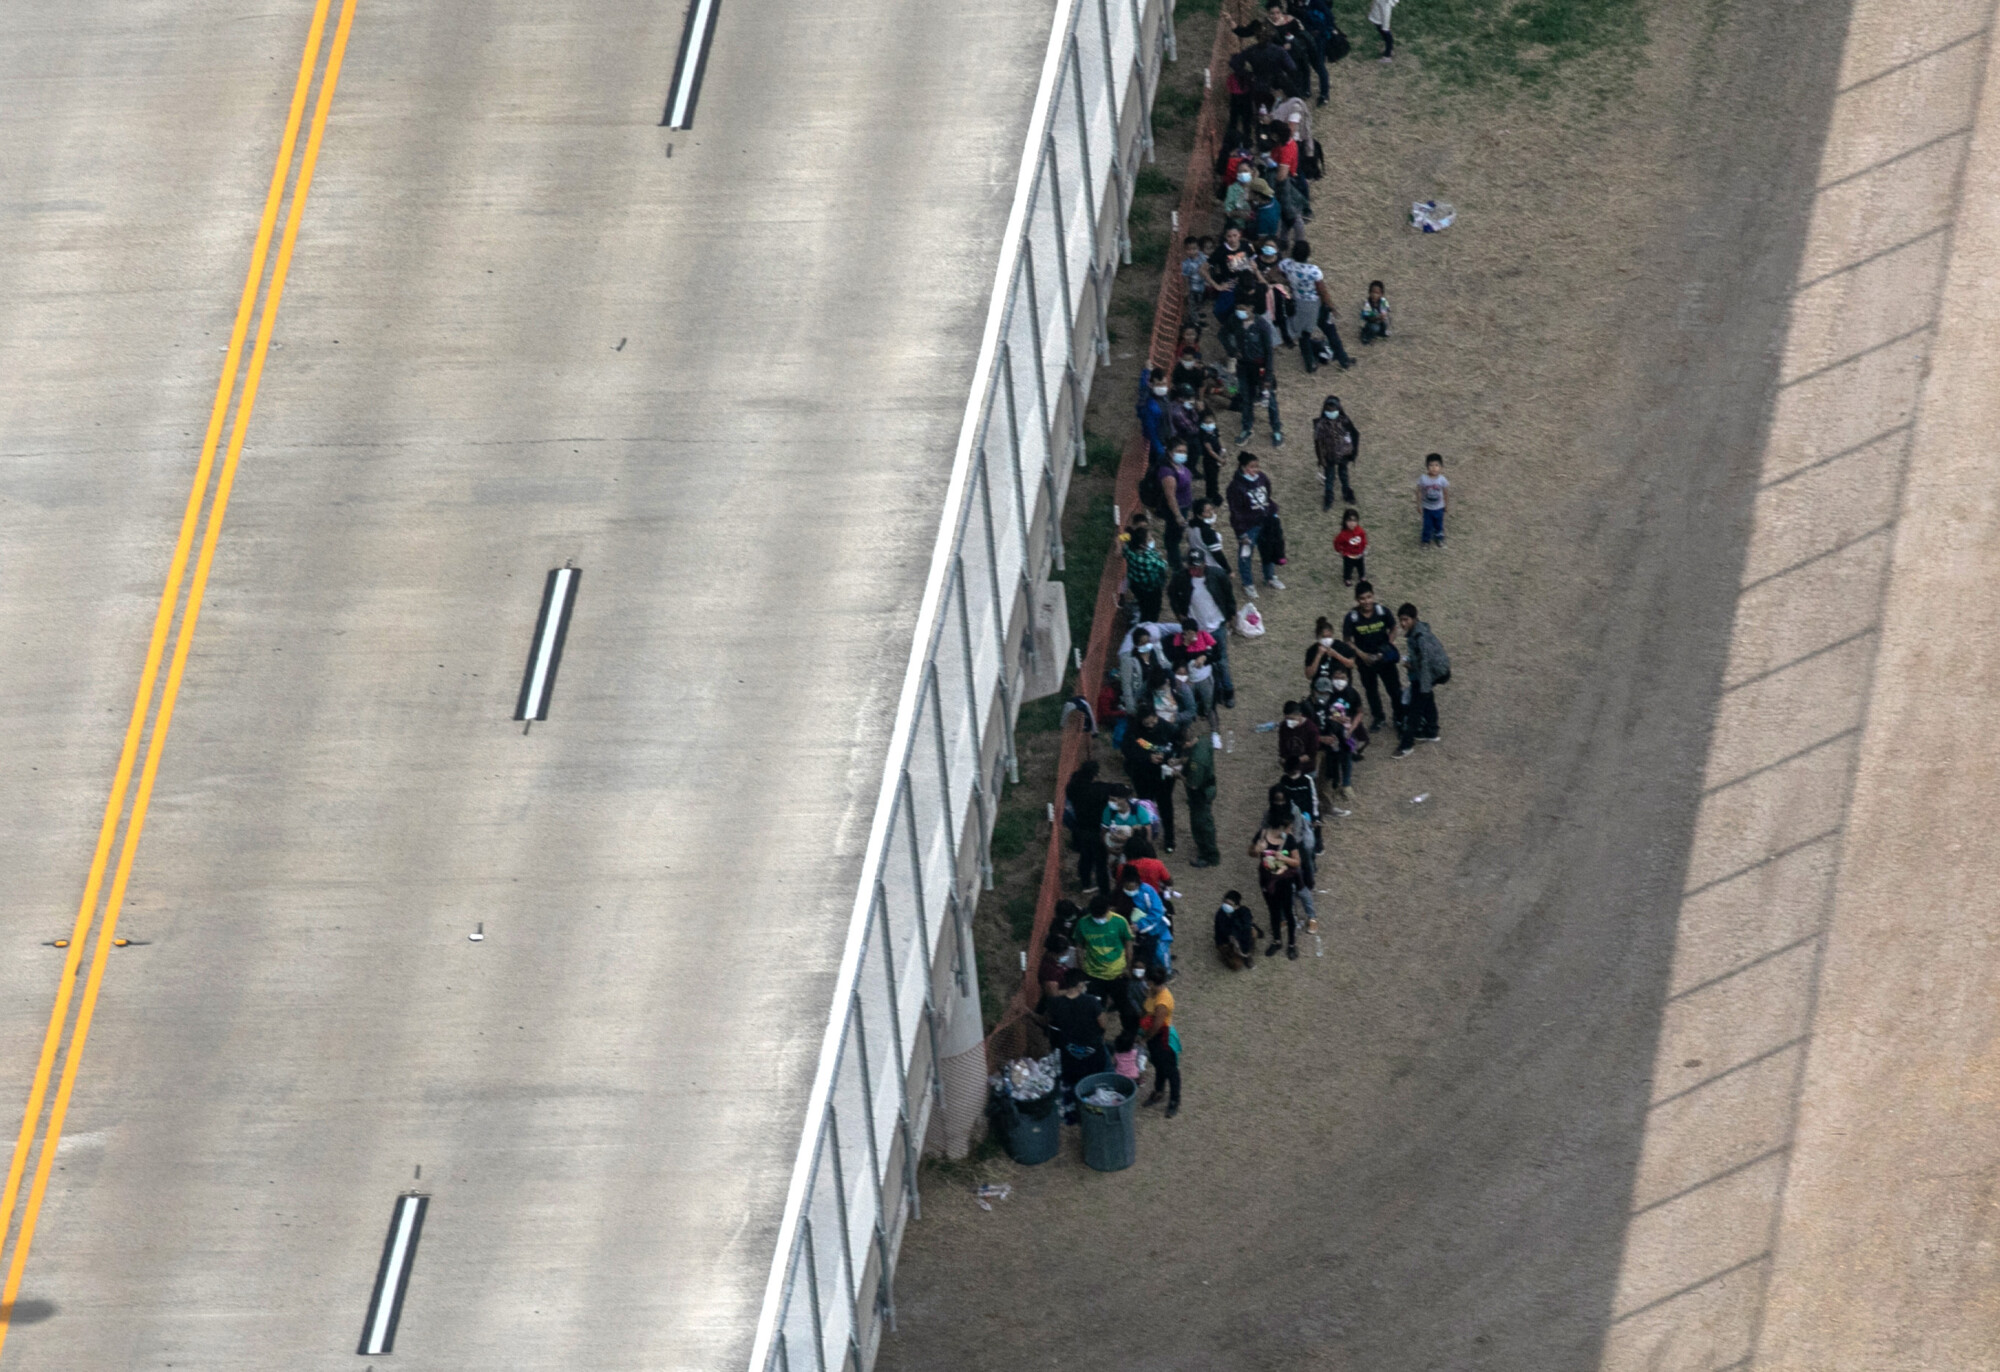 Mexico, US Discuss Stemming Migrant Surge